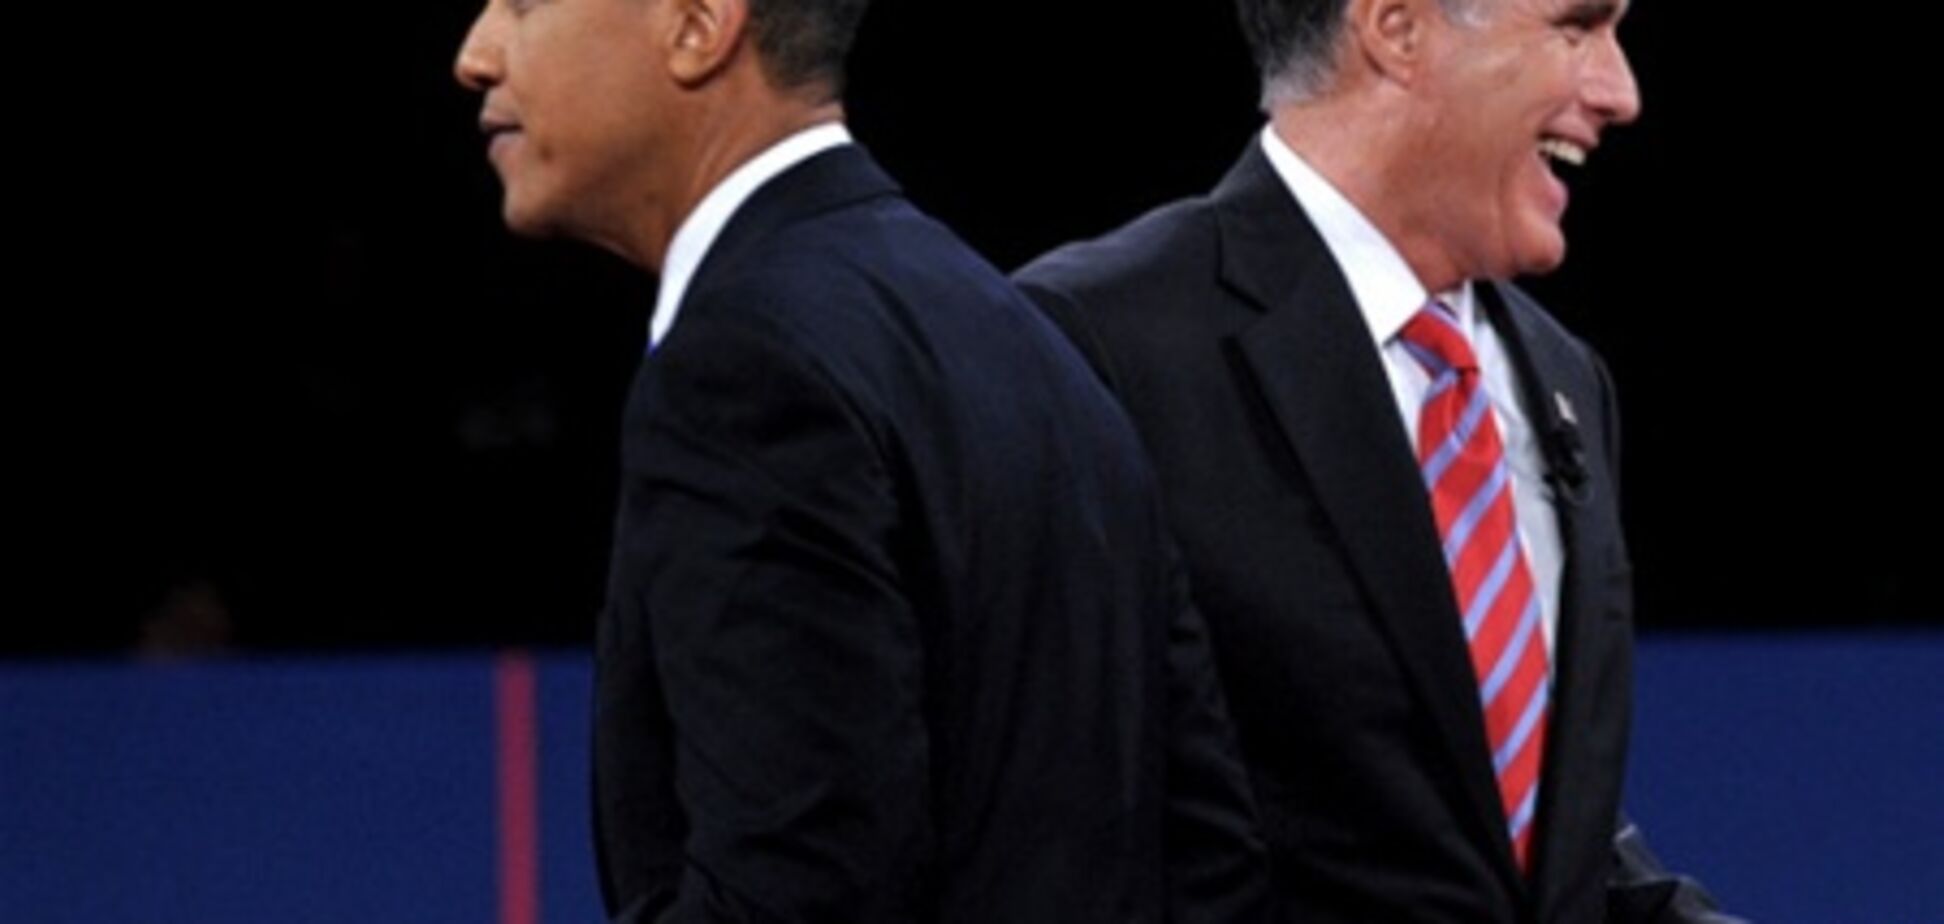 На дебатах Обама высмеивал устаревшие взгляды Ромни